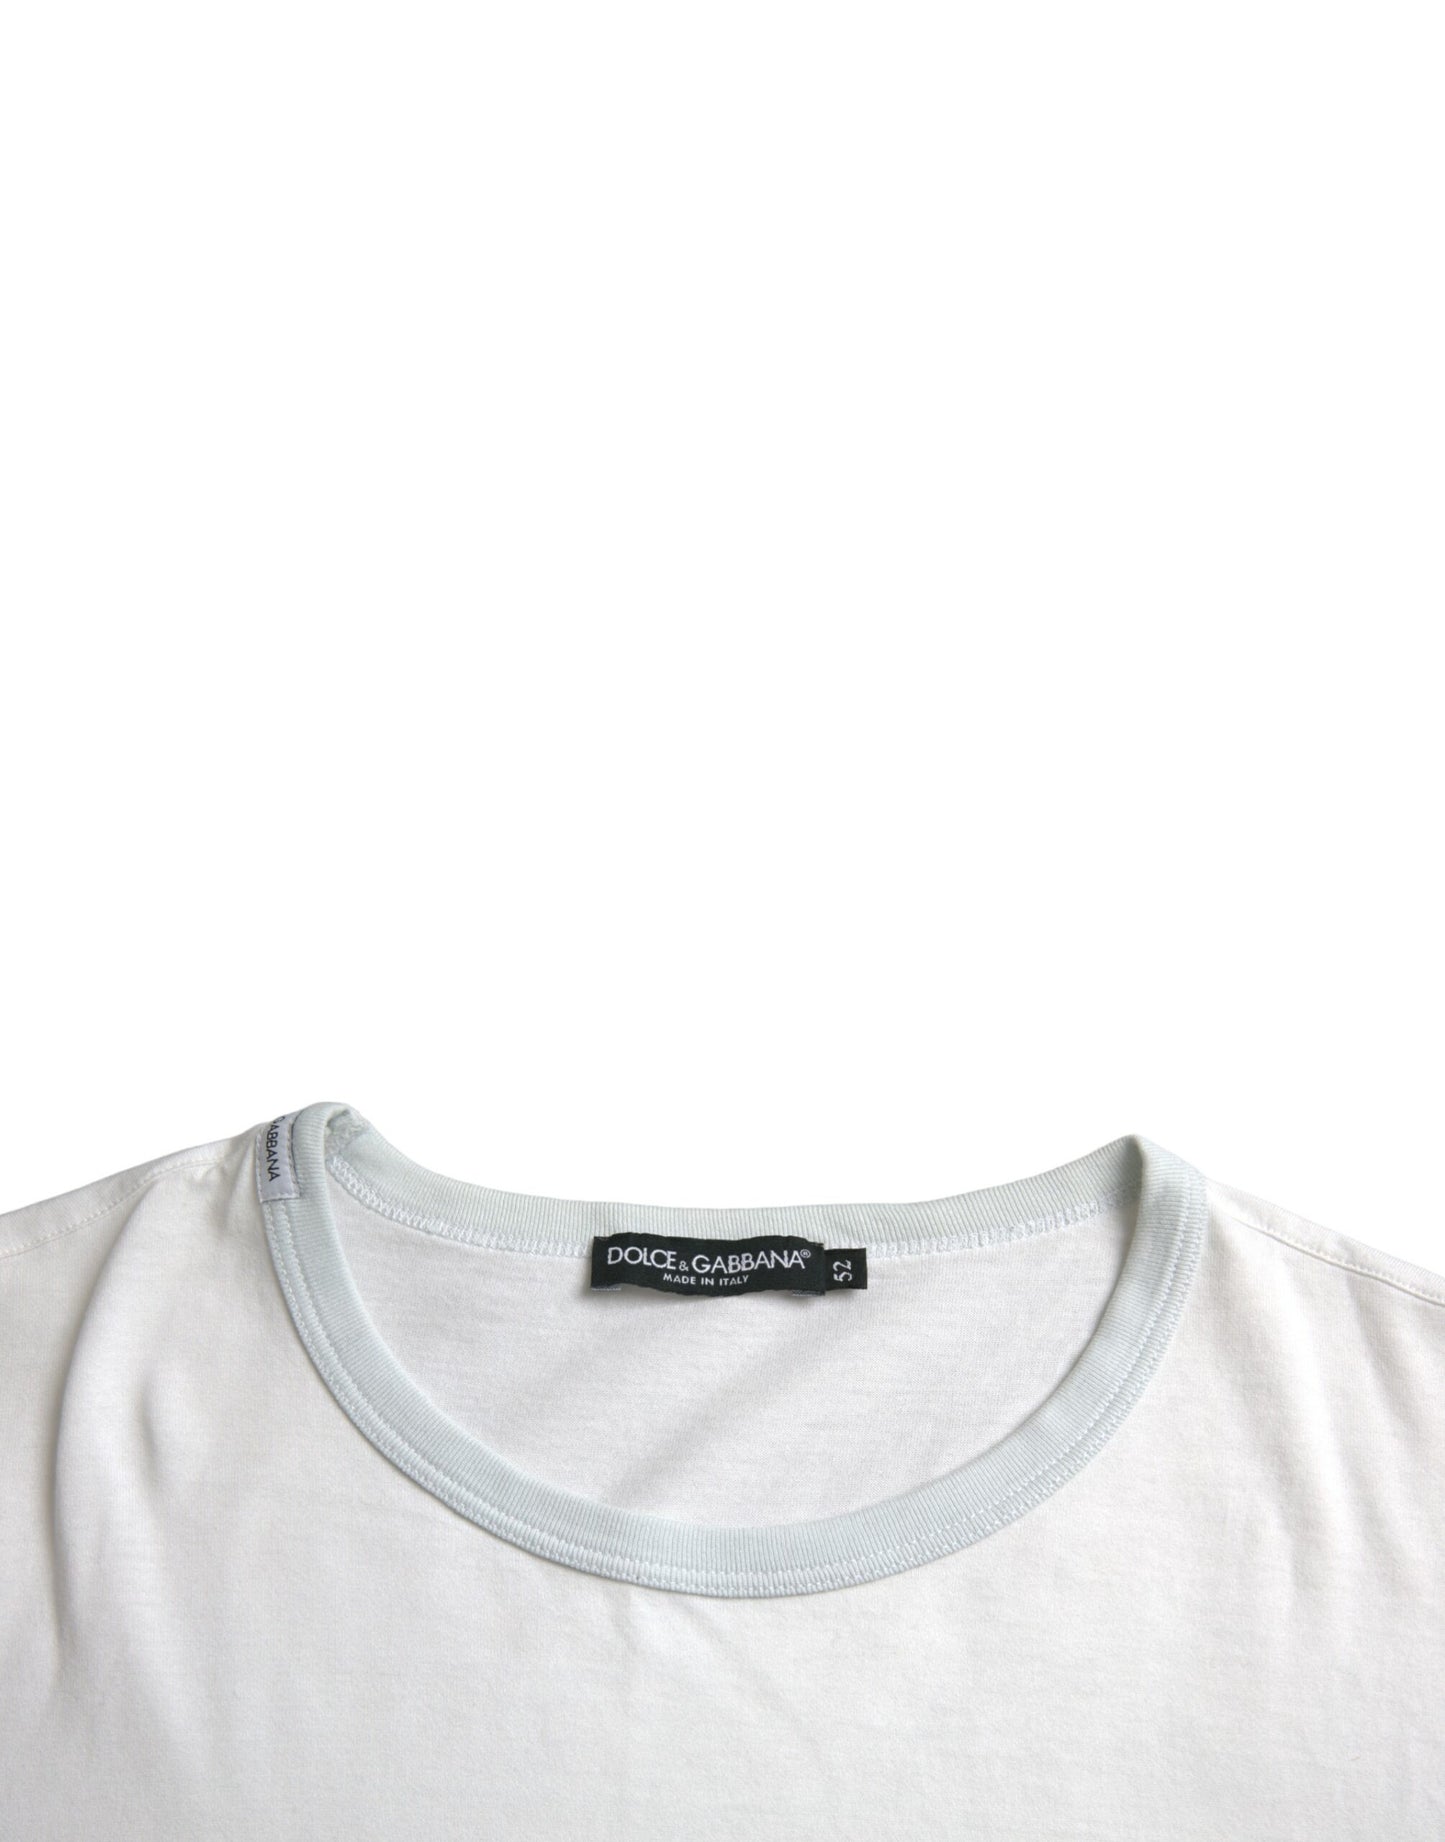 Dolce & Gabbana White Cotton Round Neck Short Sleeve T-shirt